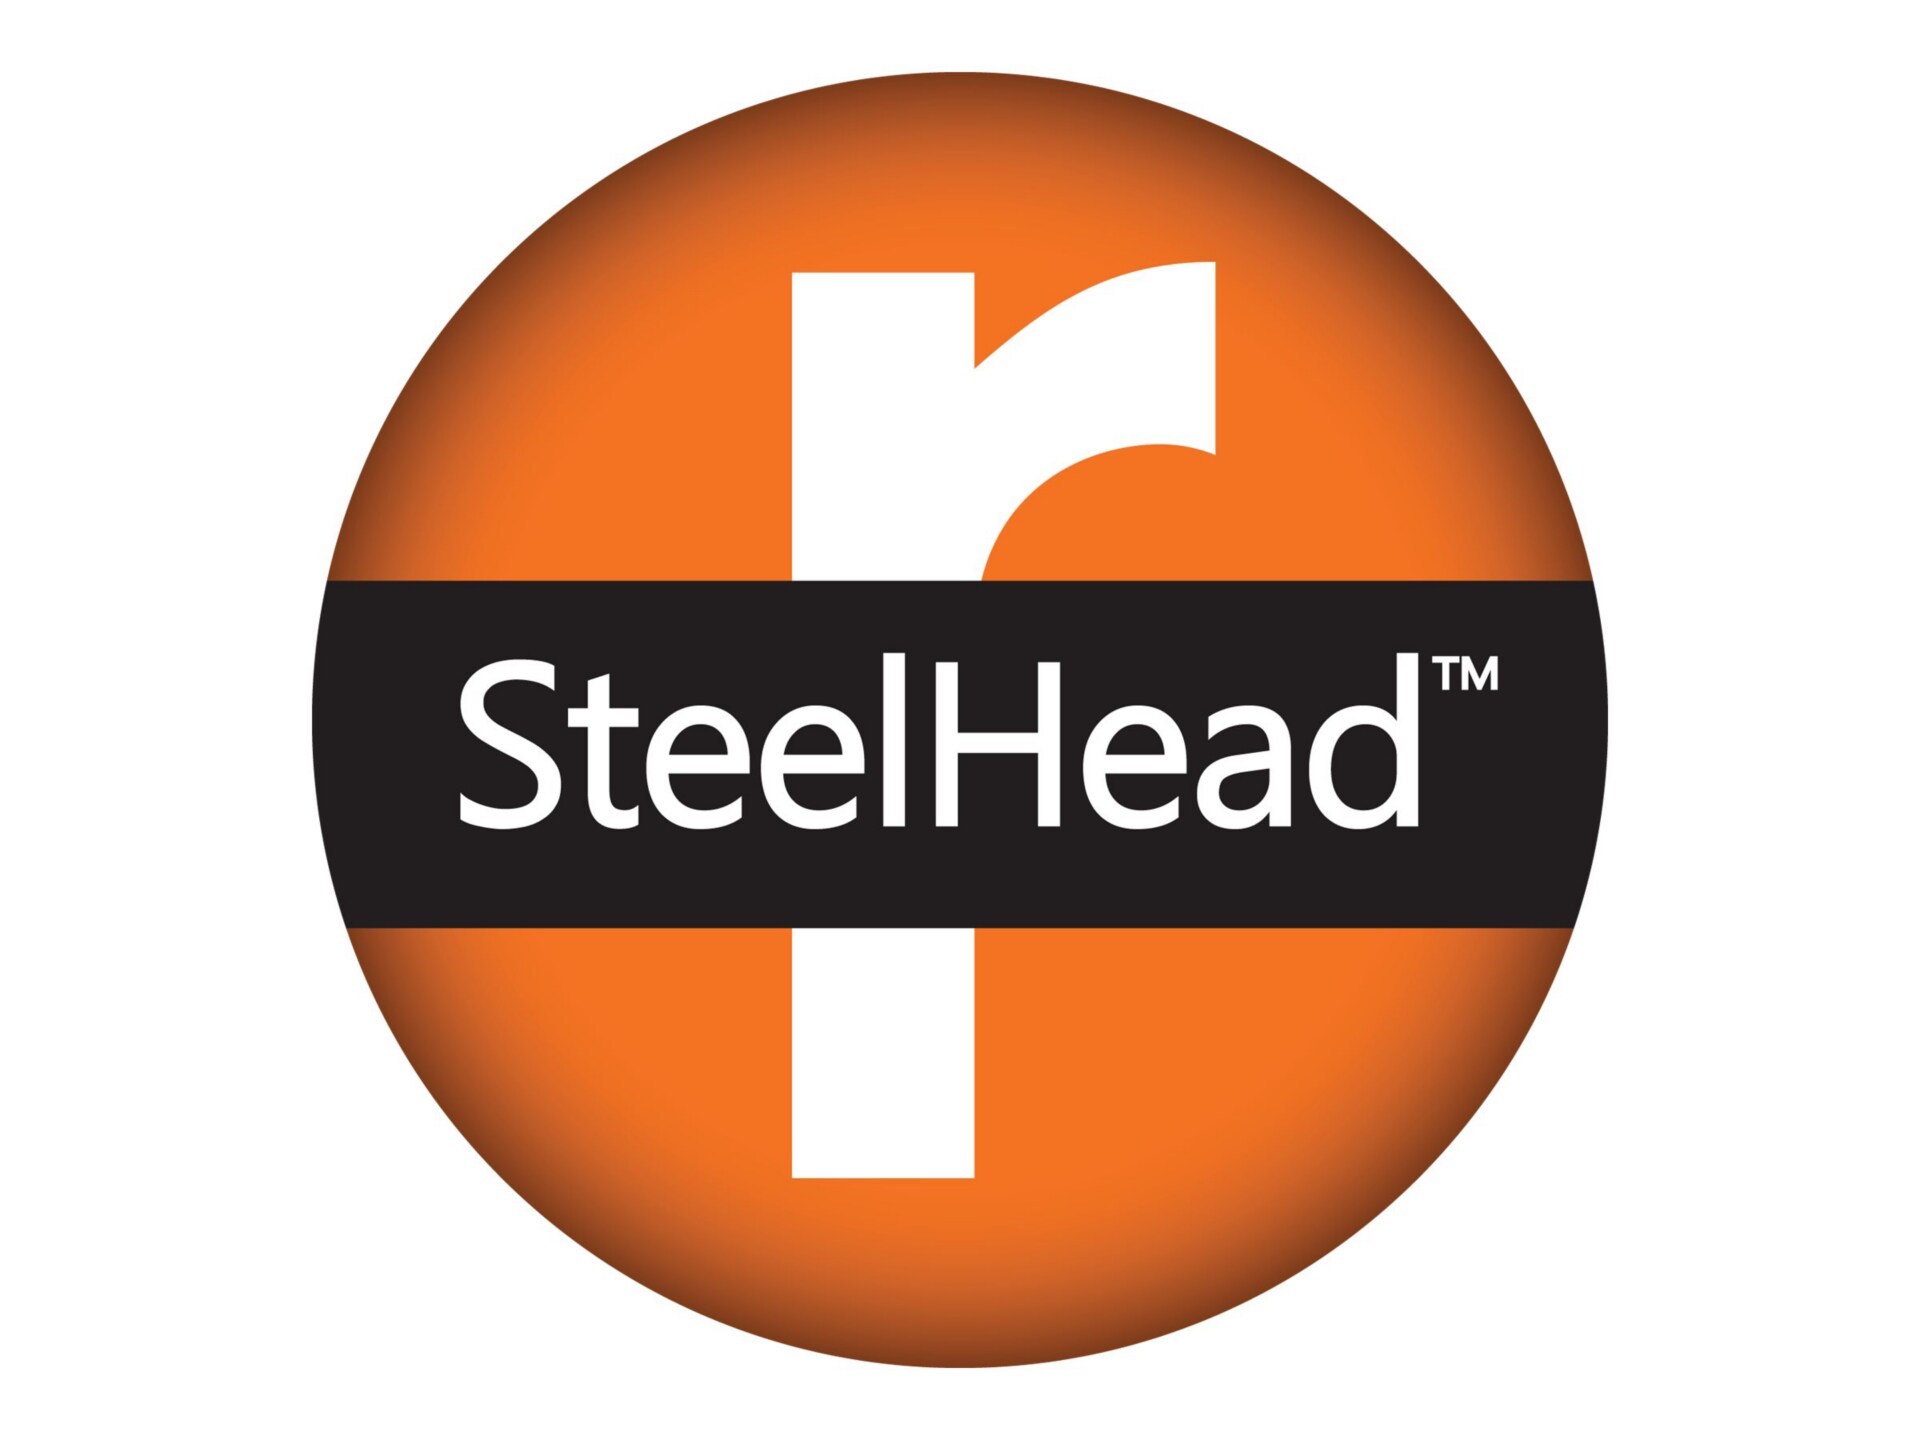 Riverbed SteelHead CX Appliance 03080 Essentials - license - 1 license